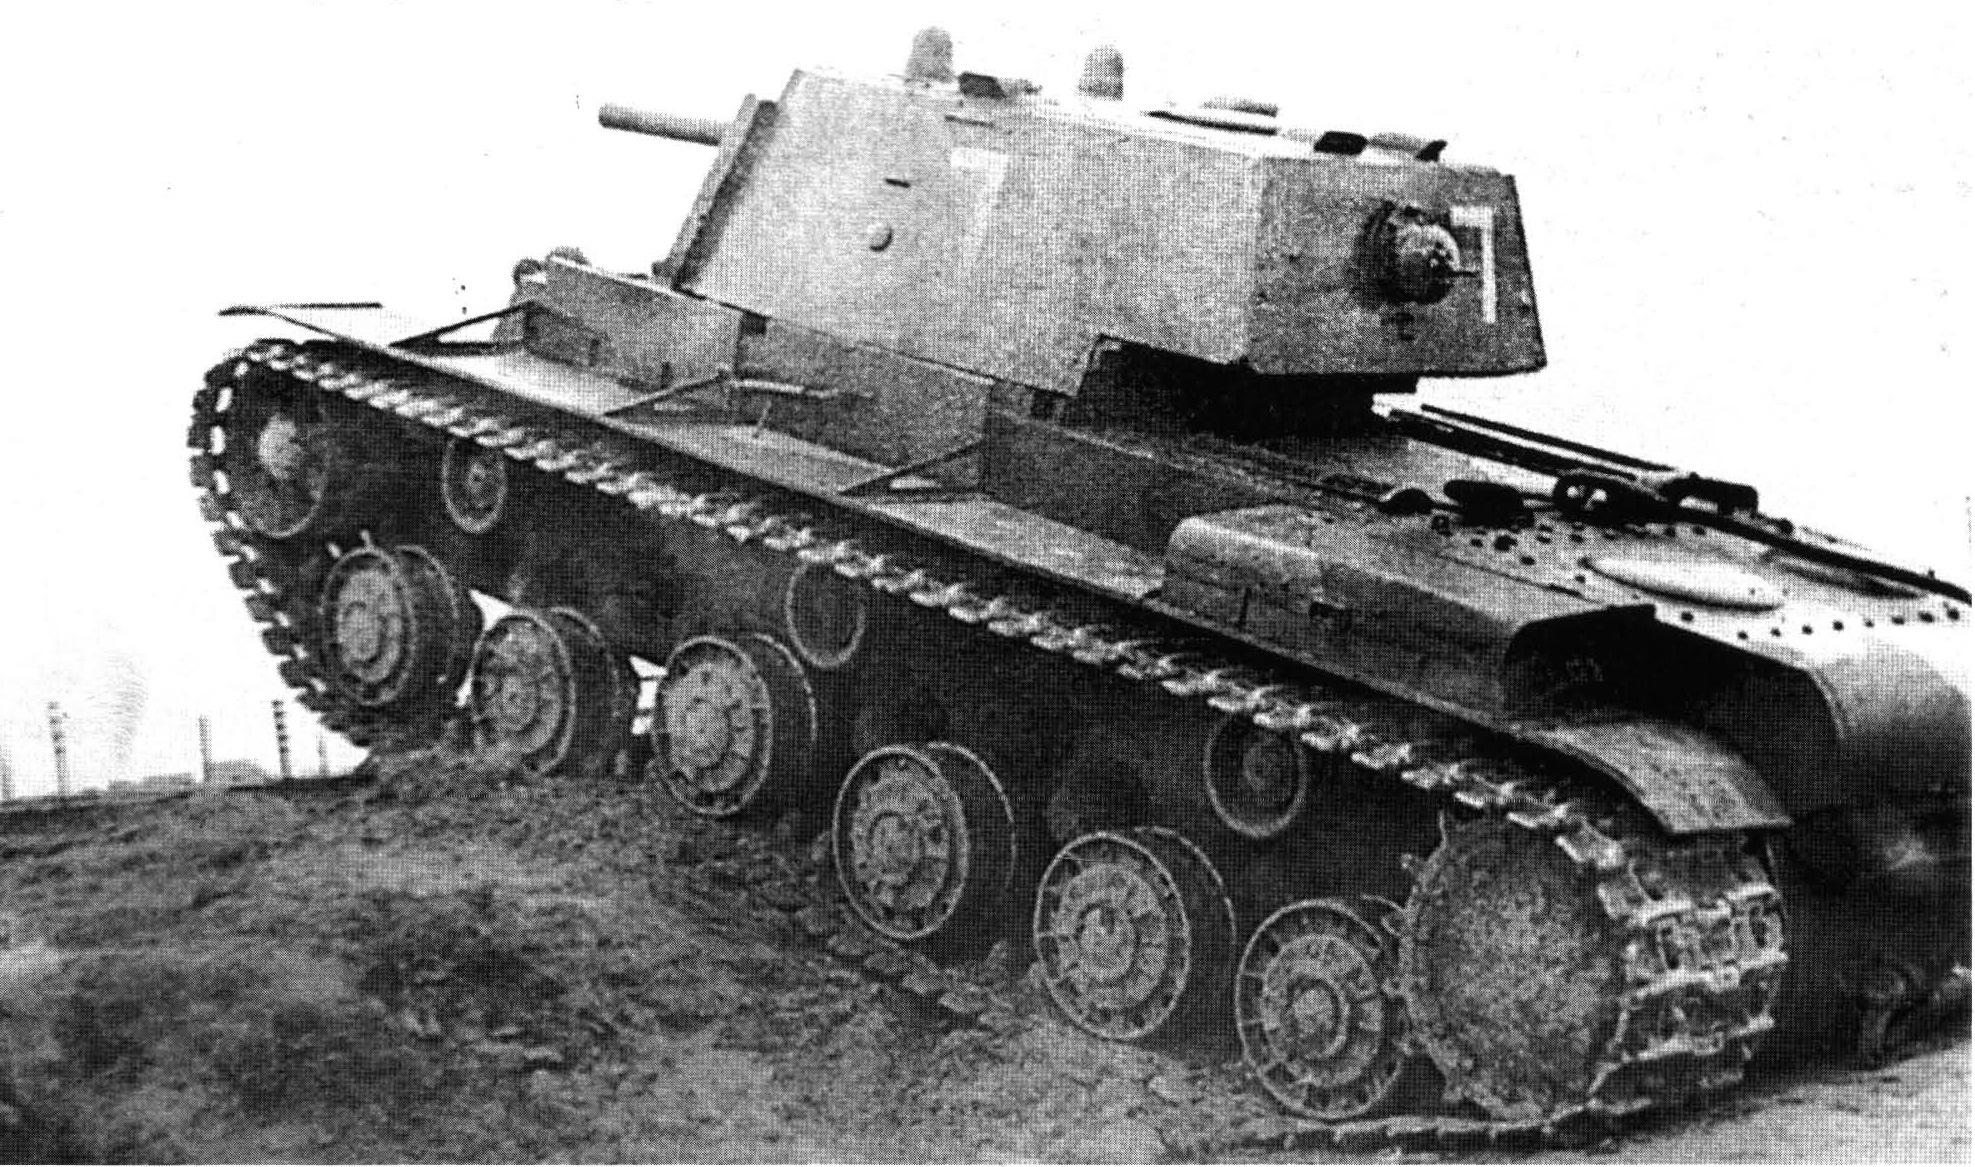 КВ - танк с тяжелой судьбой машины, танки